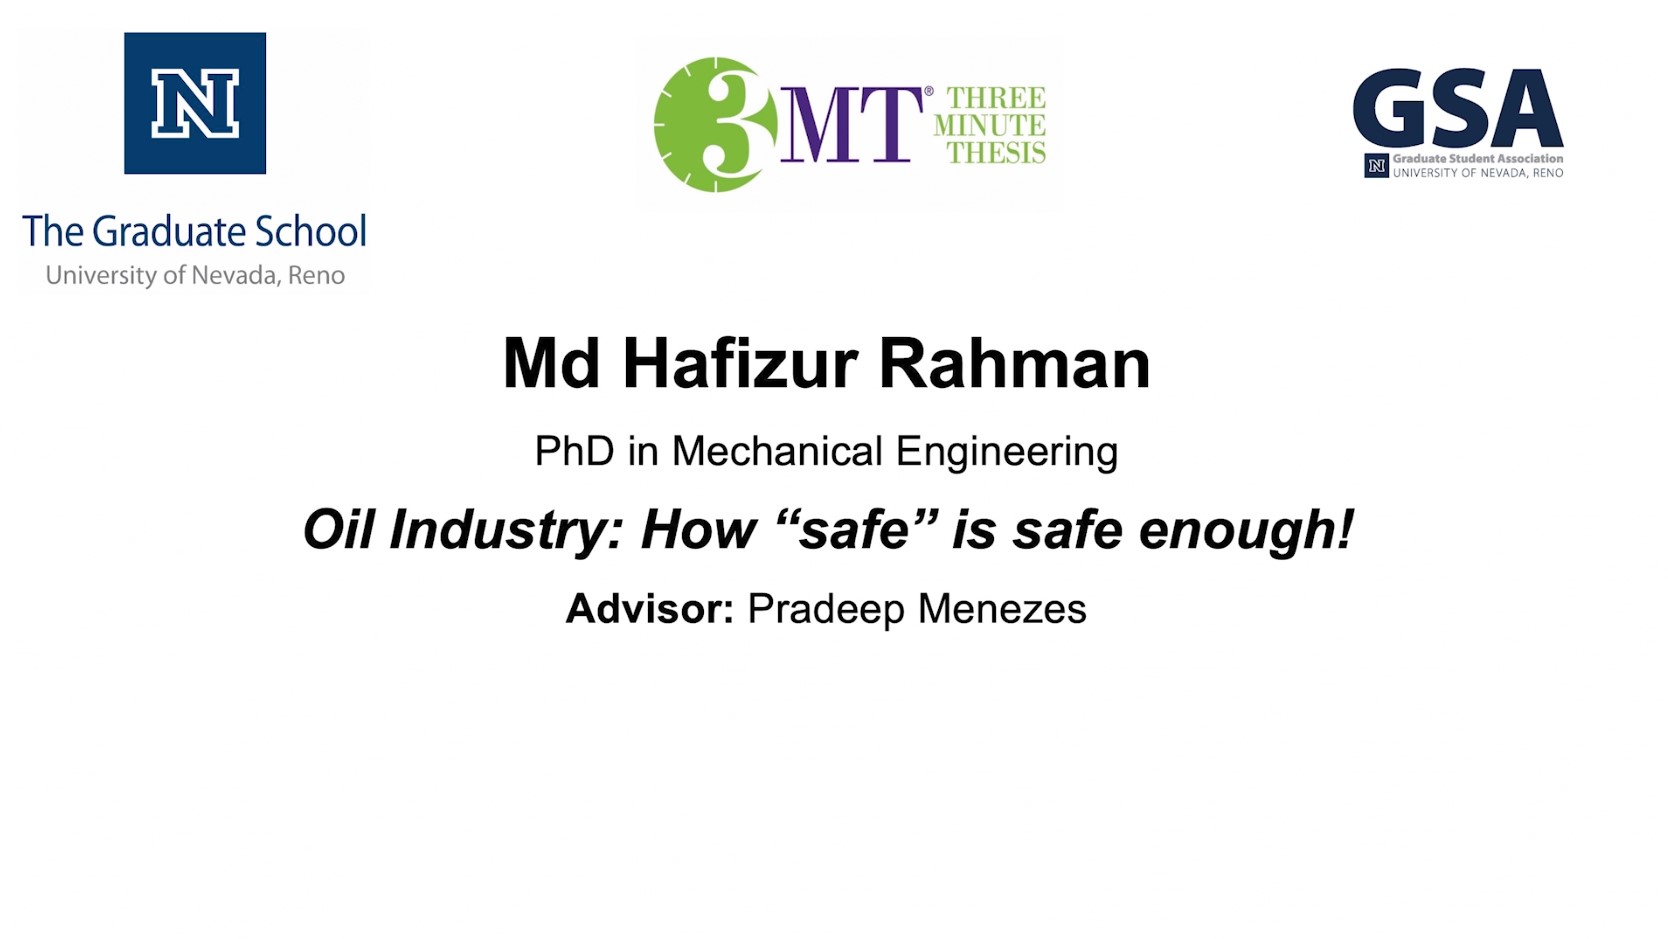 Thumbnail of Md Hafizur Rahman's title slide